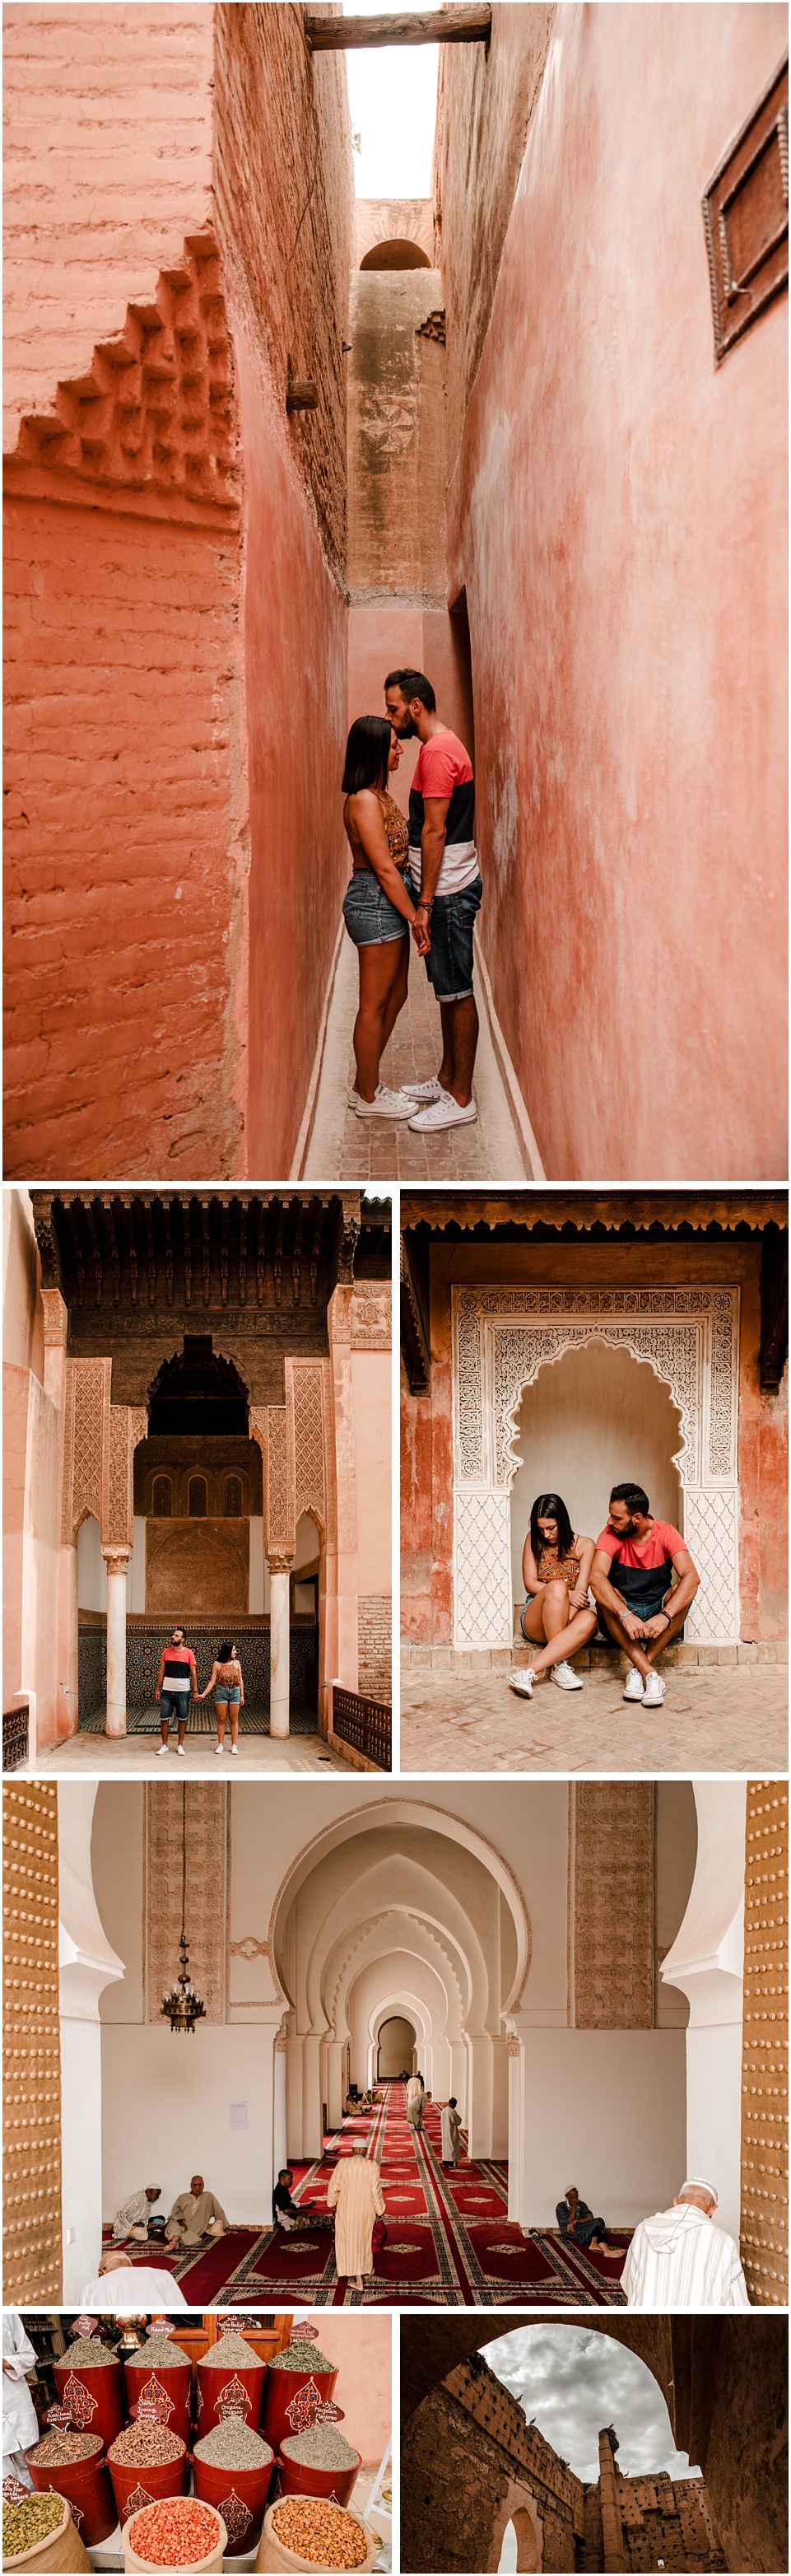 sesion de fotos en marruecos